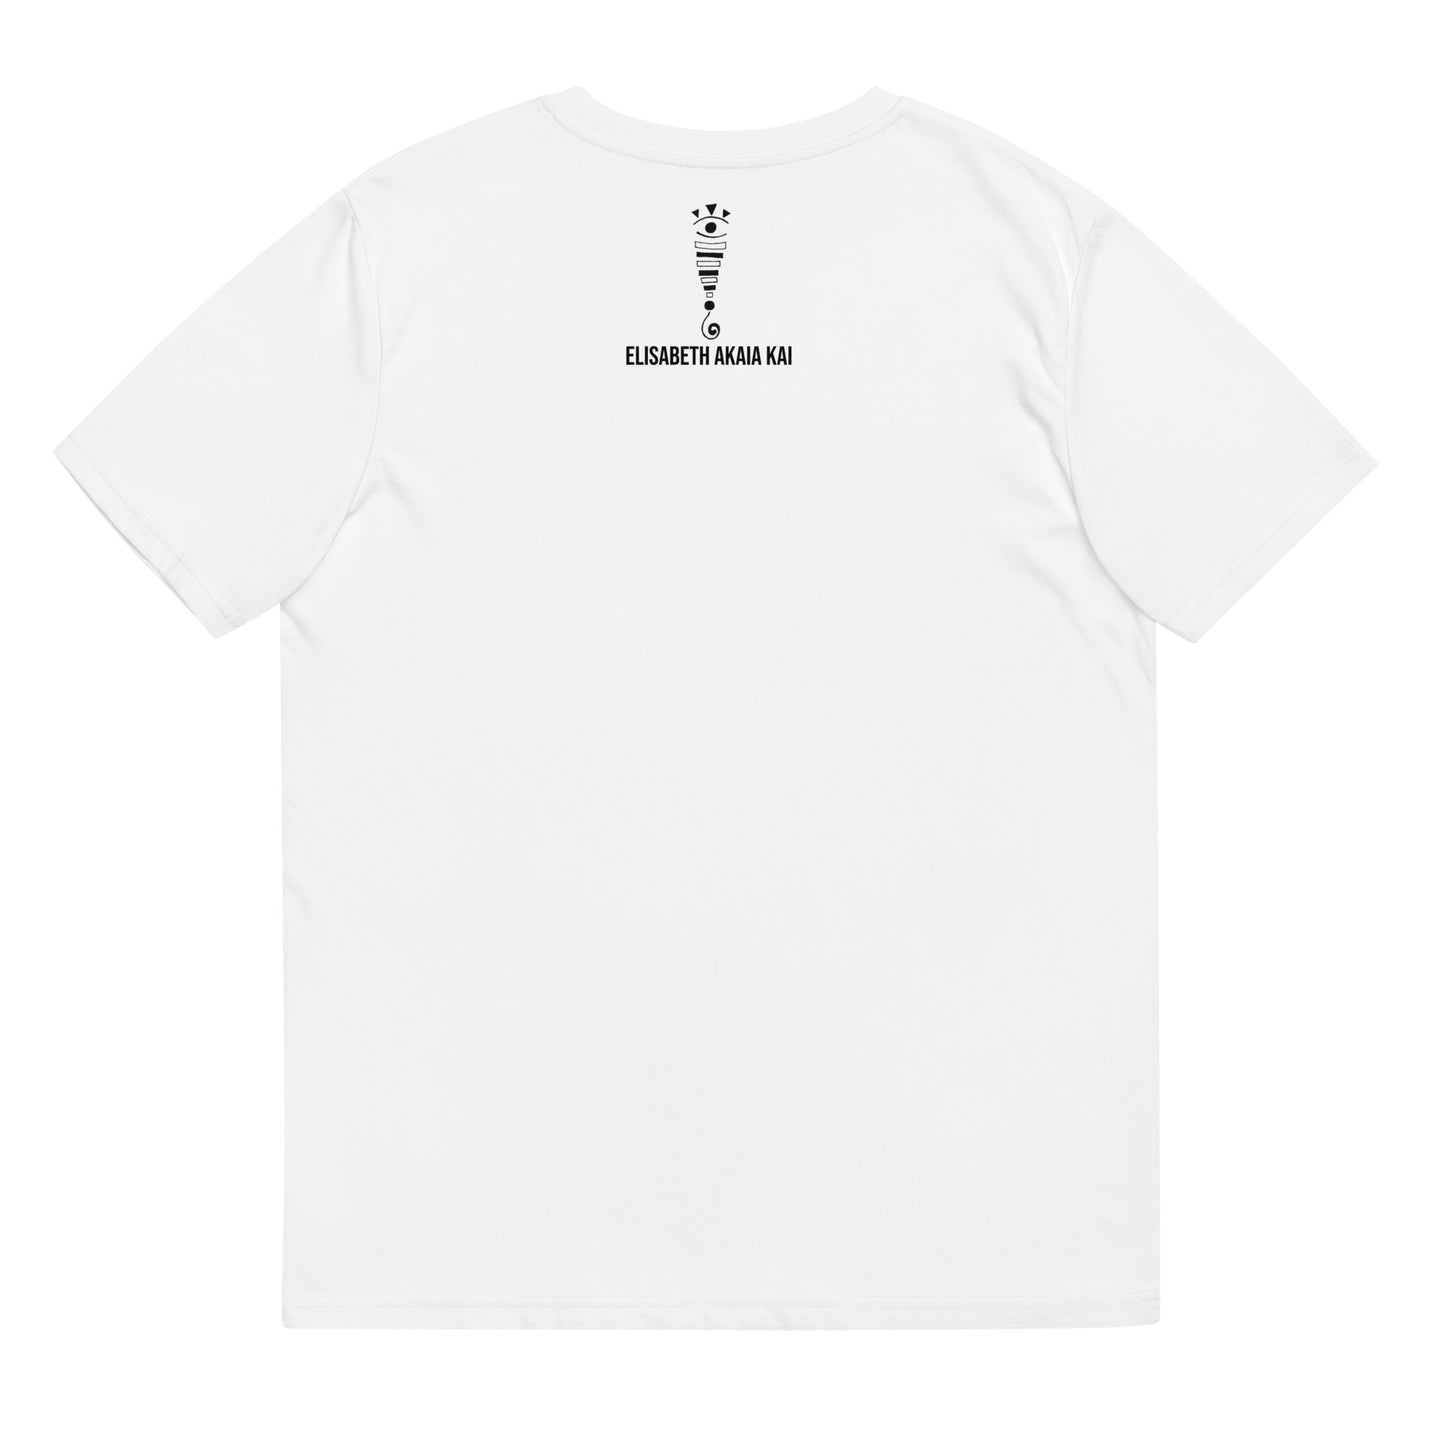 LA FILLE AUX SANTIGAS - T-shirt unisexe en coton biologique